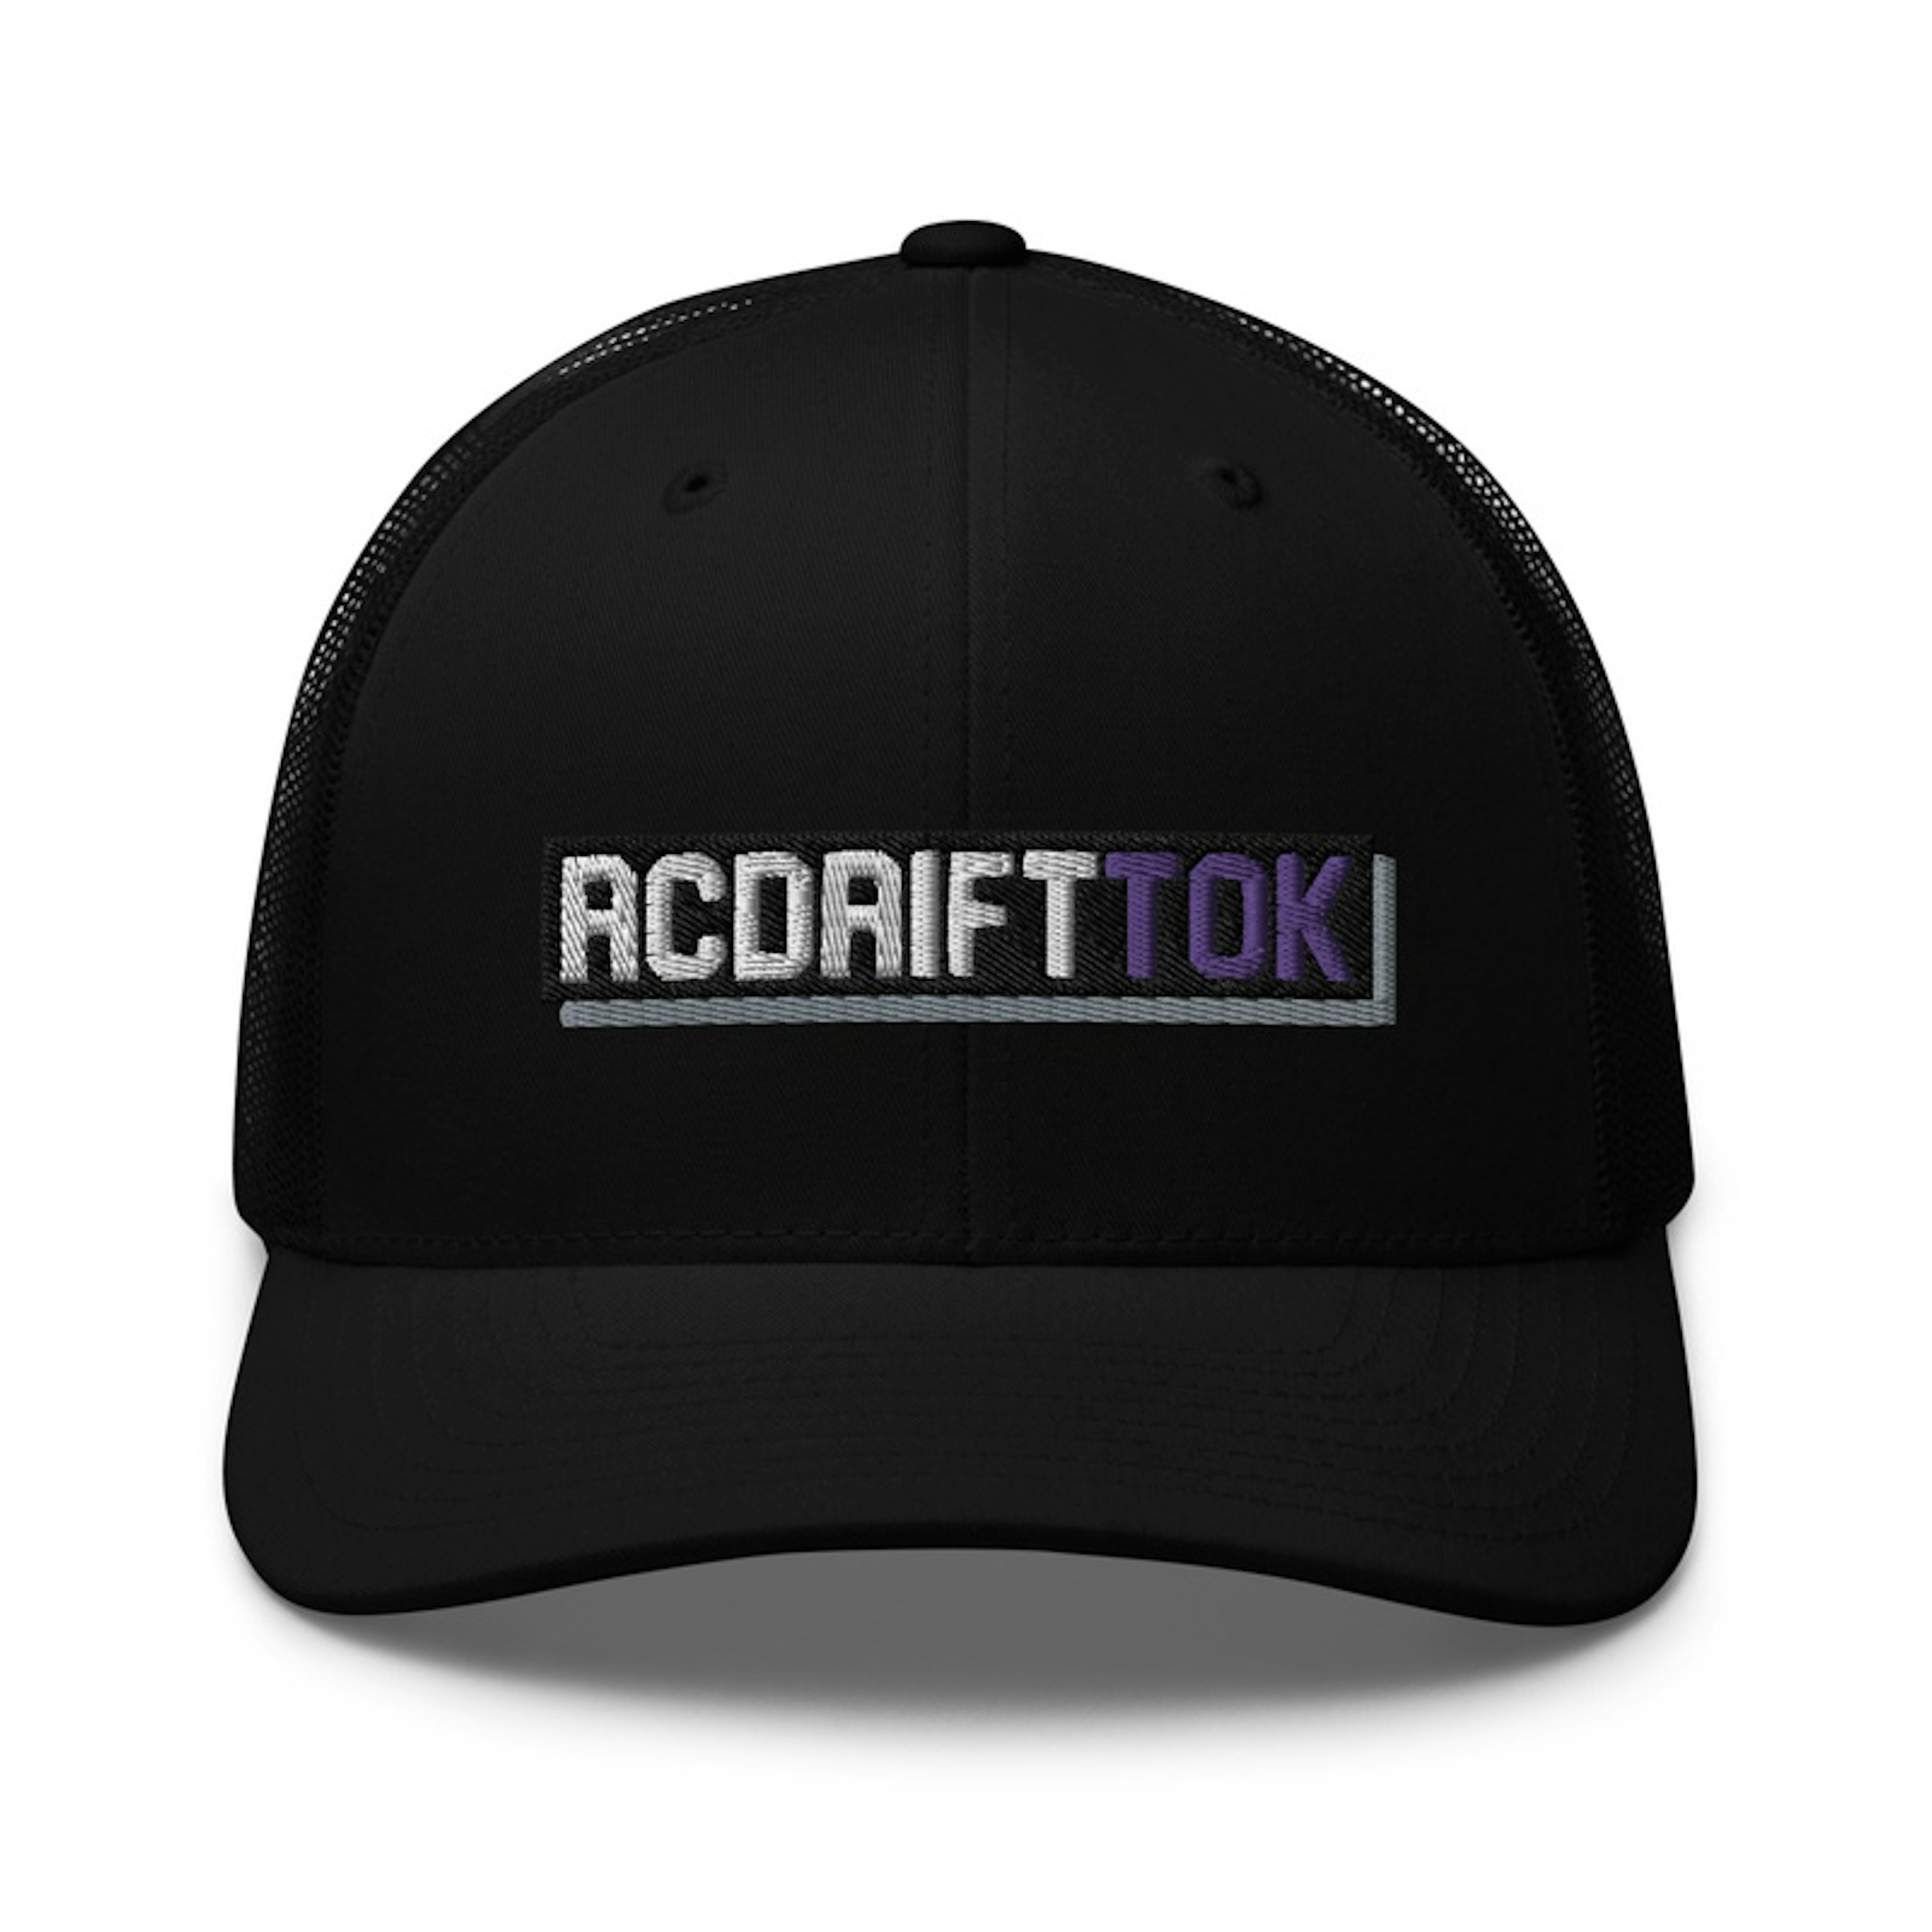 RCDriftTok trucker cap